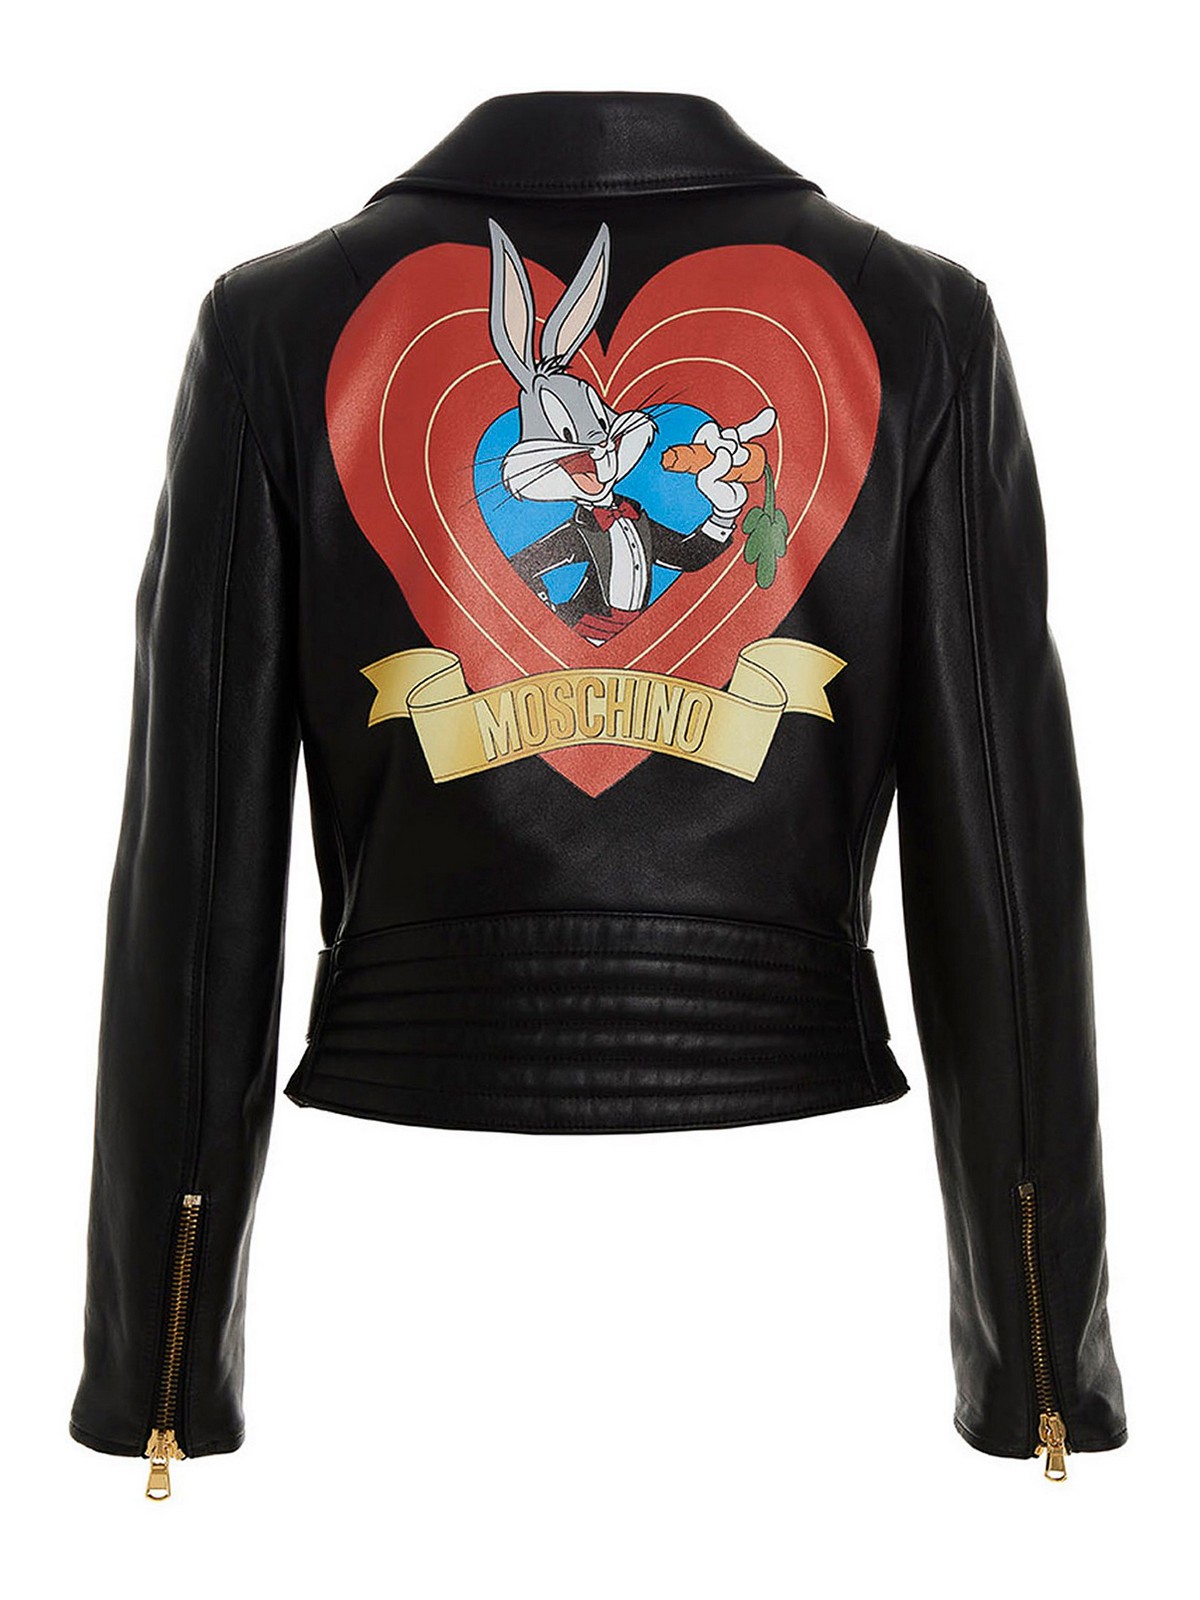 Leather jacket Moschino - Bugs bunny jacket - 377910701555